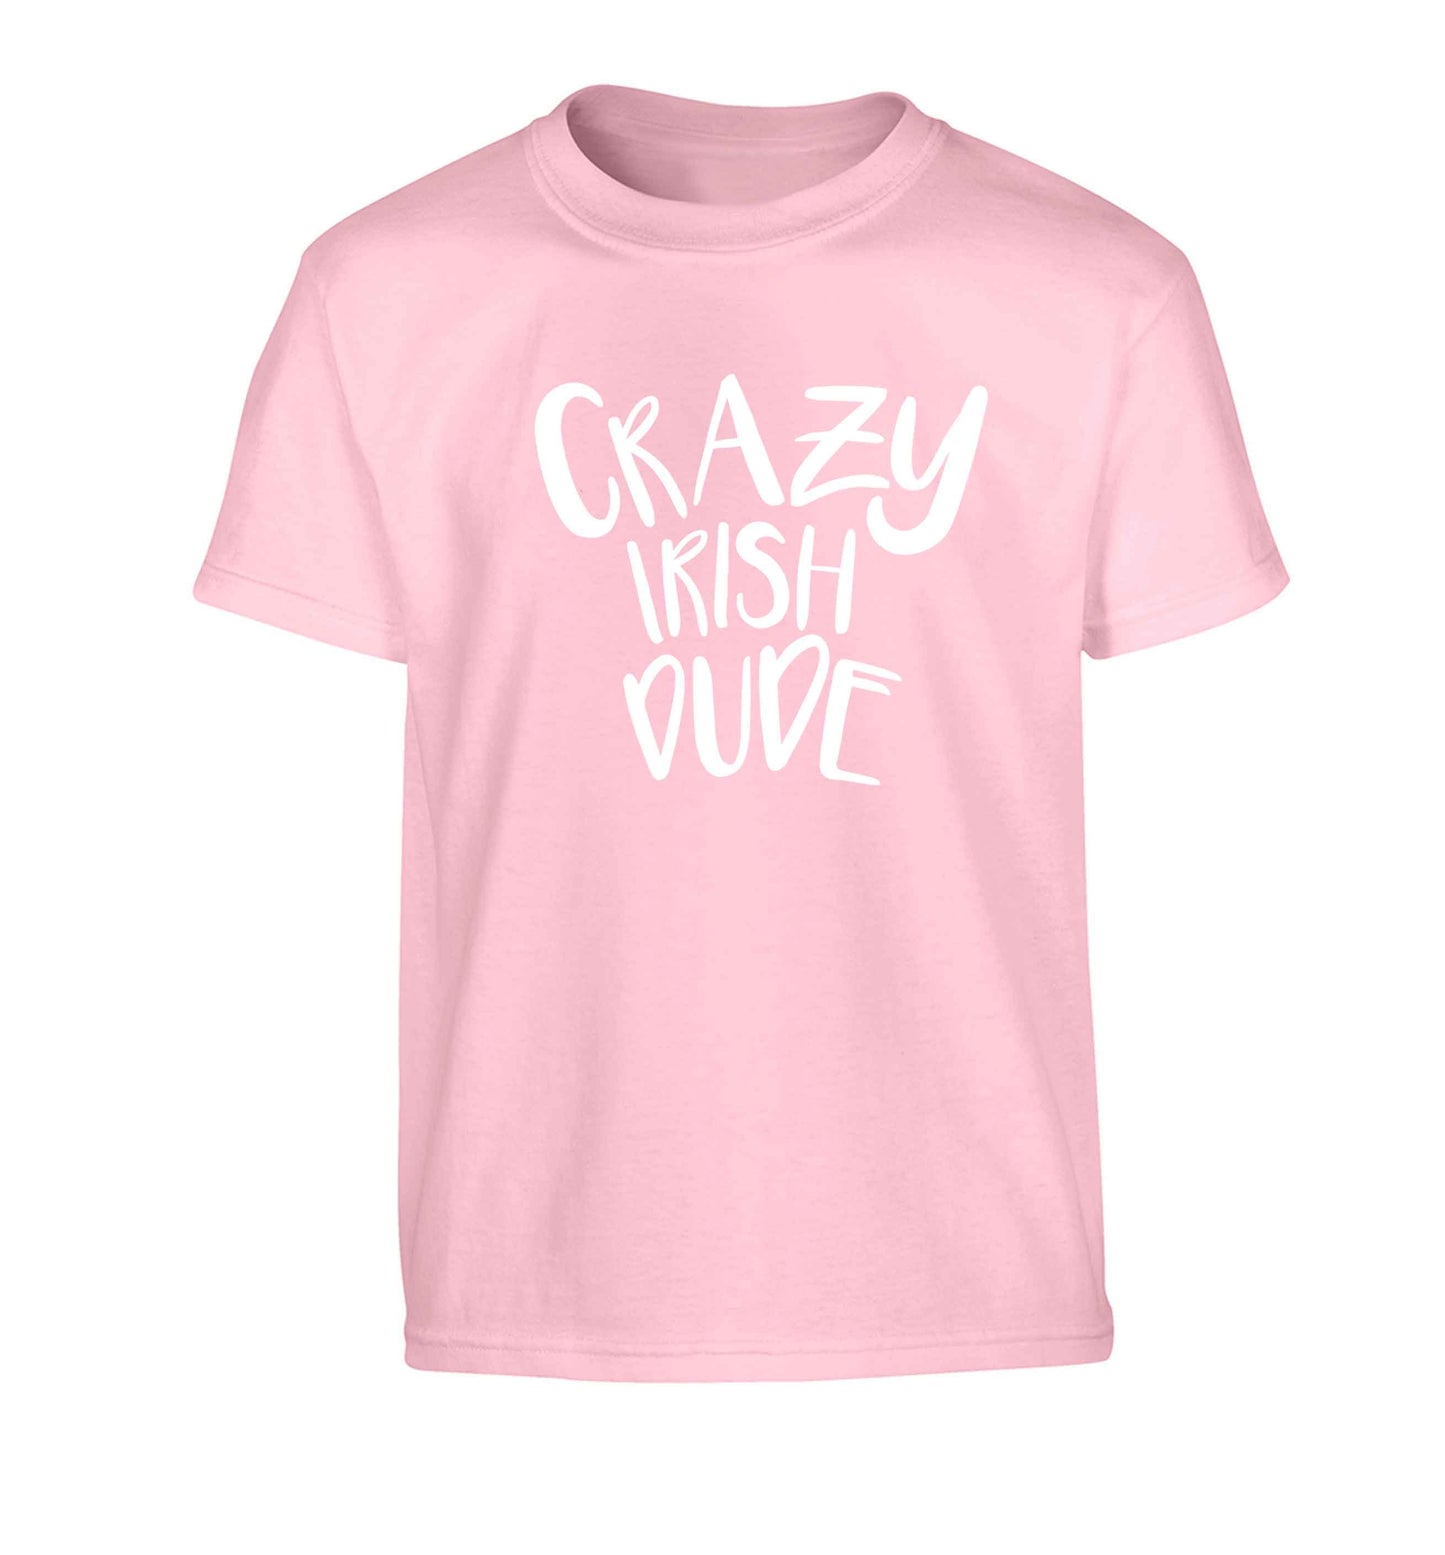 Crazy Irish dude Children's light pink Tshirt 12-13 Years